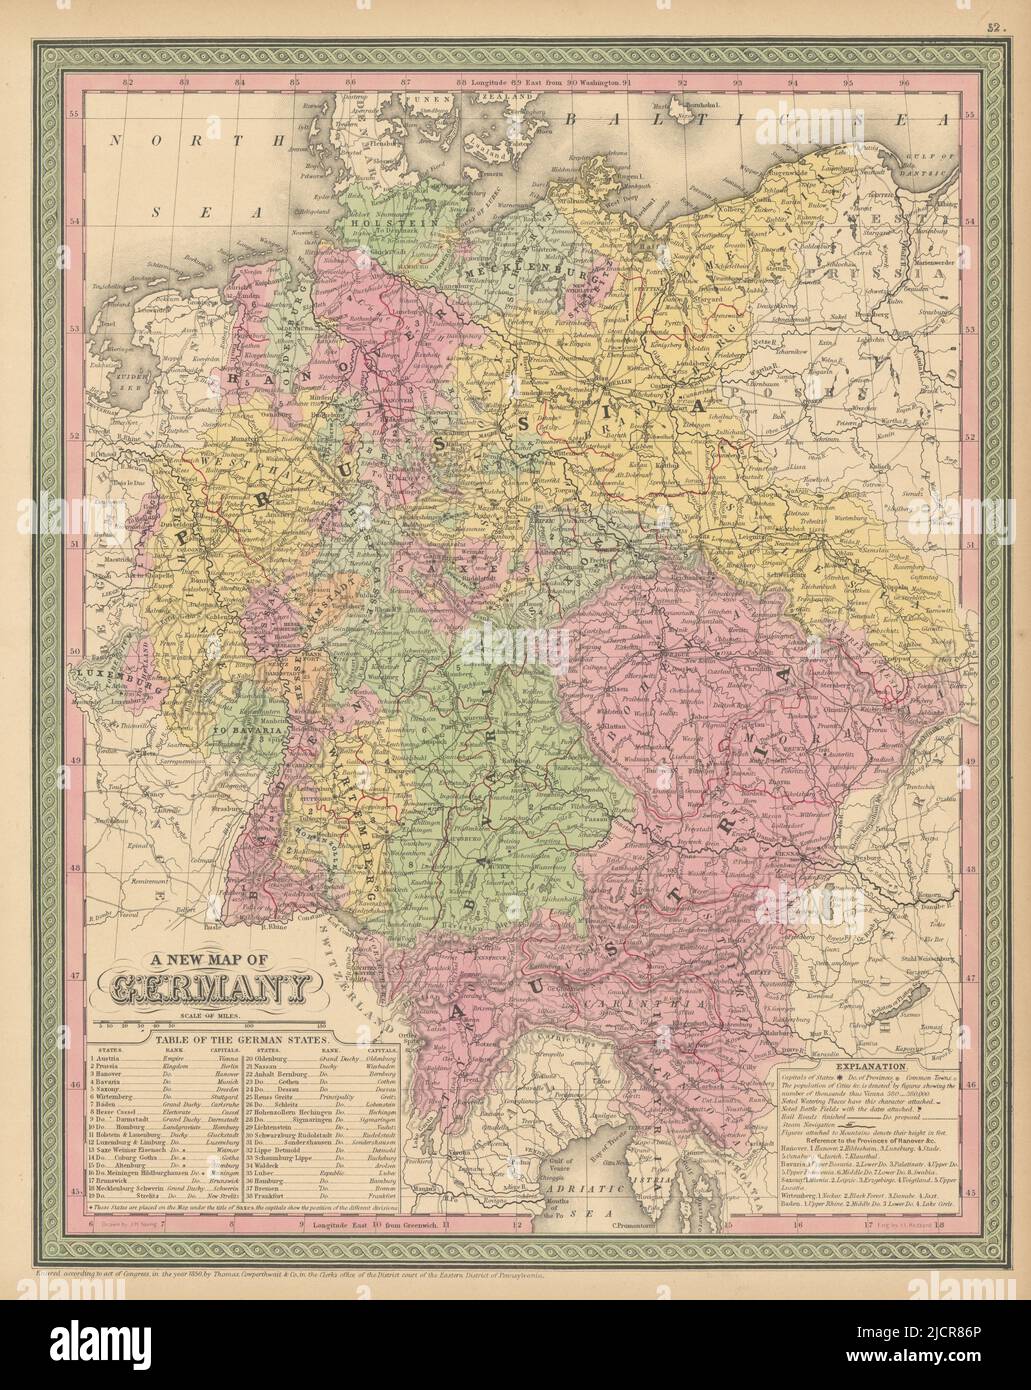 A new map of Germany. Austria Bohemia Moravia. THOMAS, COWPERTHWAIT 1852 Stock Photo